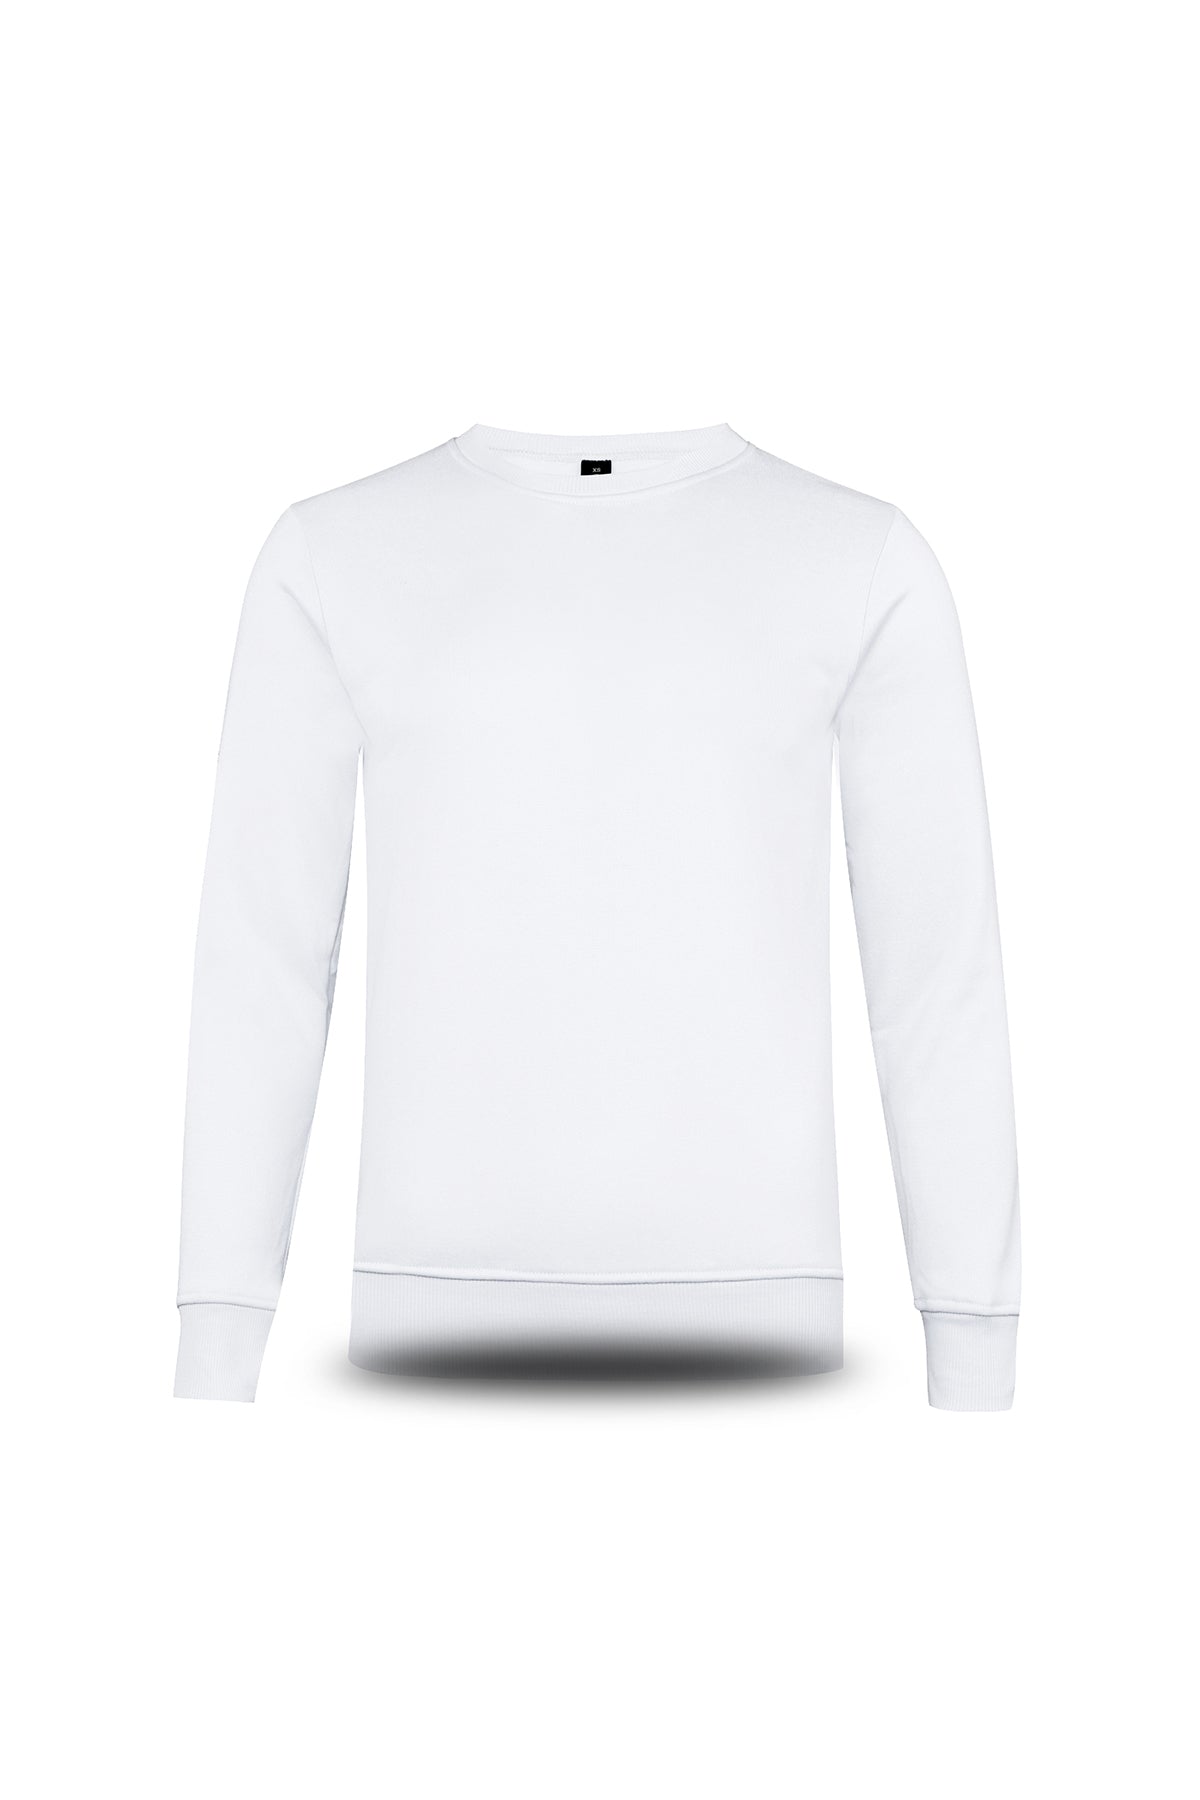 Beam Long Sleeve Sweat Shirt White